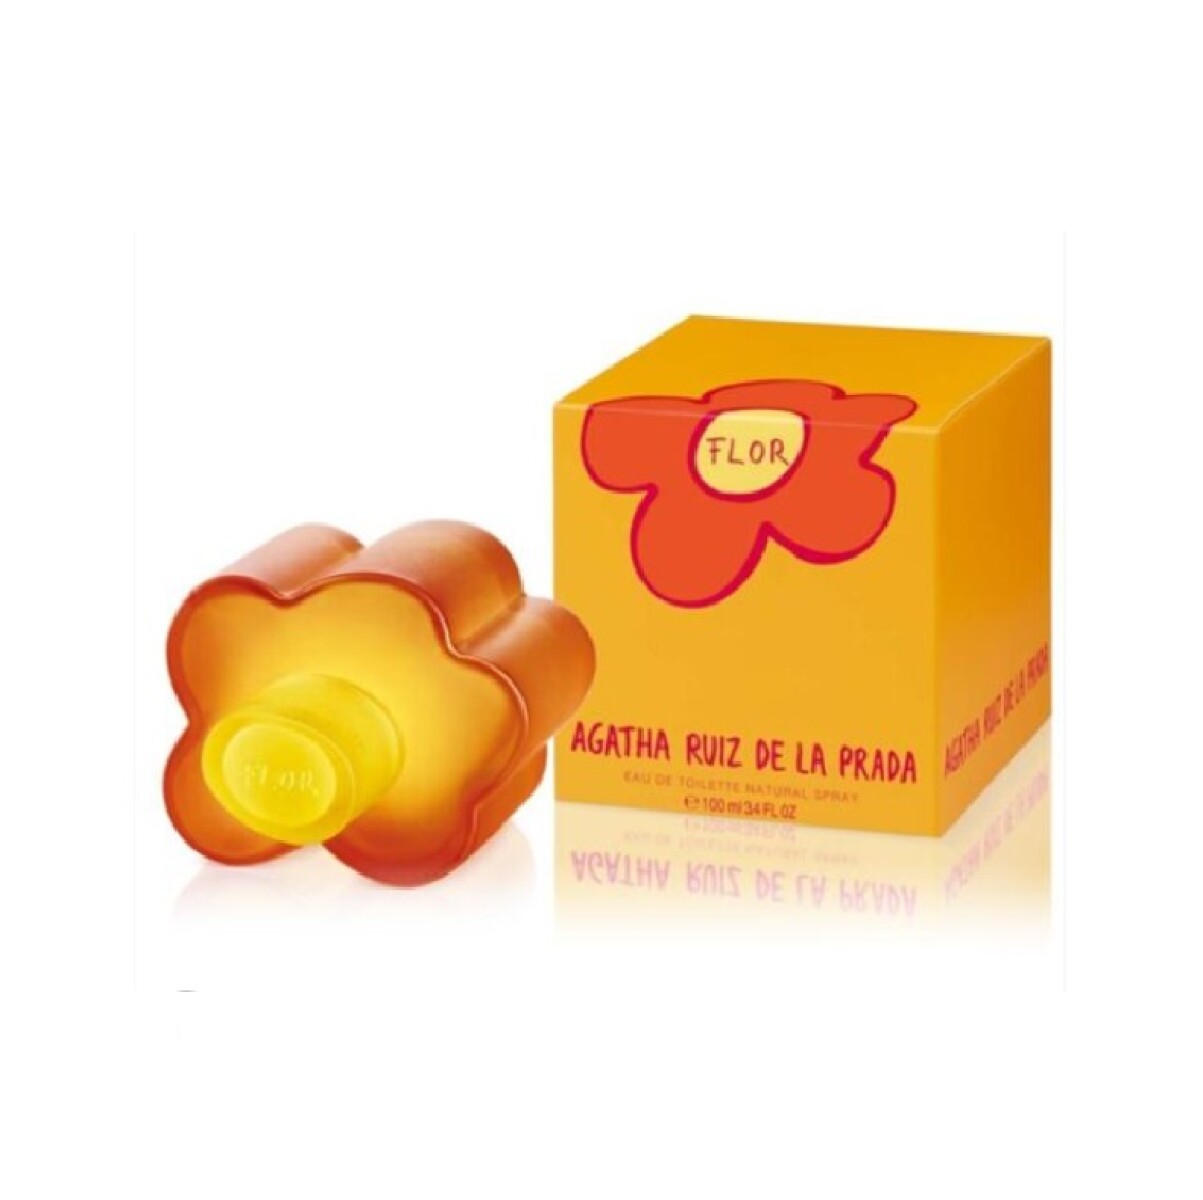 Perfume Agatha Ruiz de la Prada Eau Toilette 100ml Flor - 001 